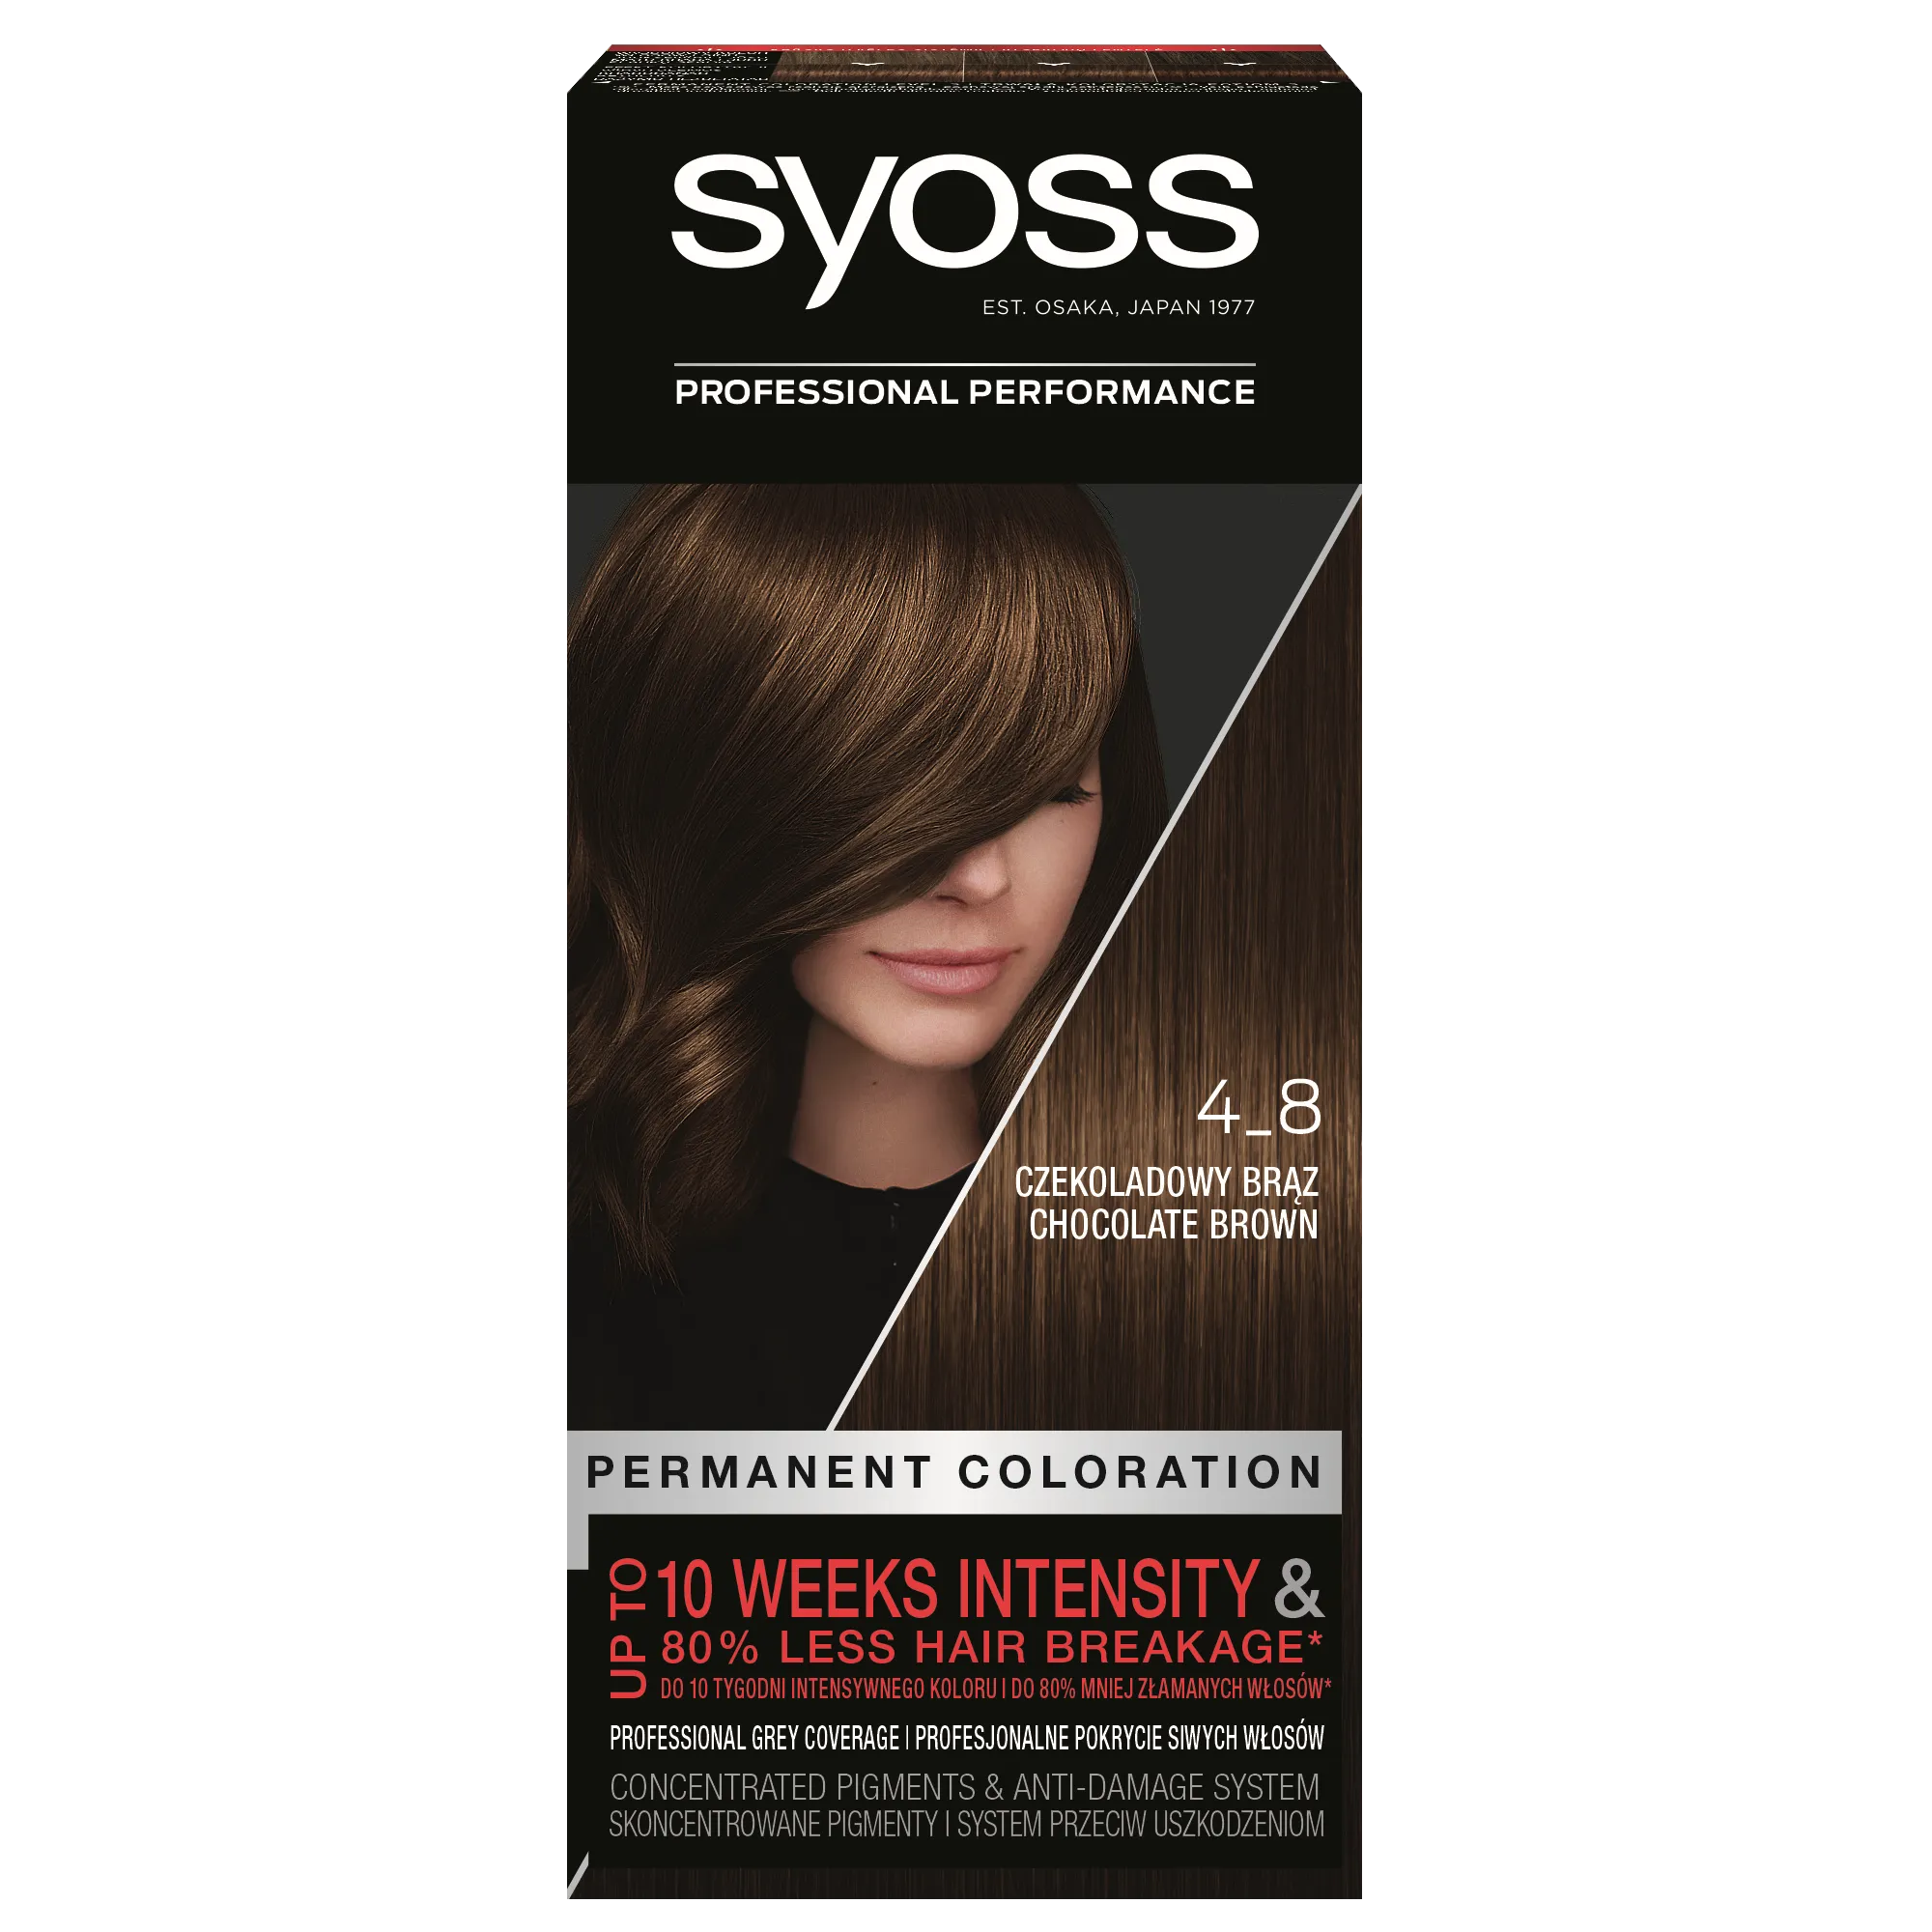 Syoss Permanent Coloration farba do włosów trwale koloryzująca 4-8 Czekoladowy Brąz, 1 szt.